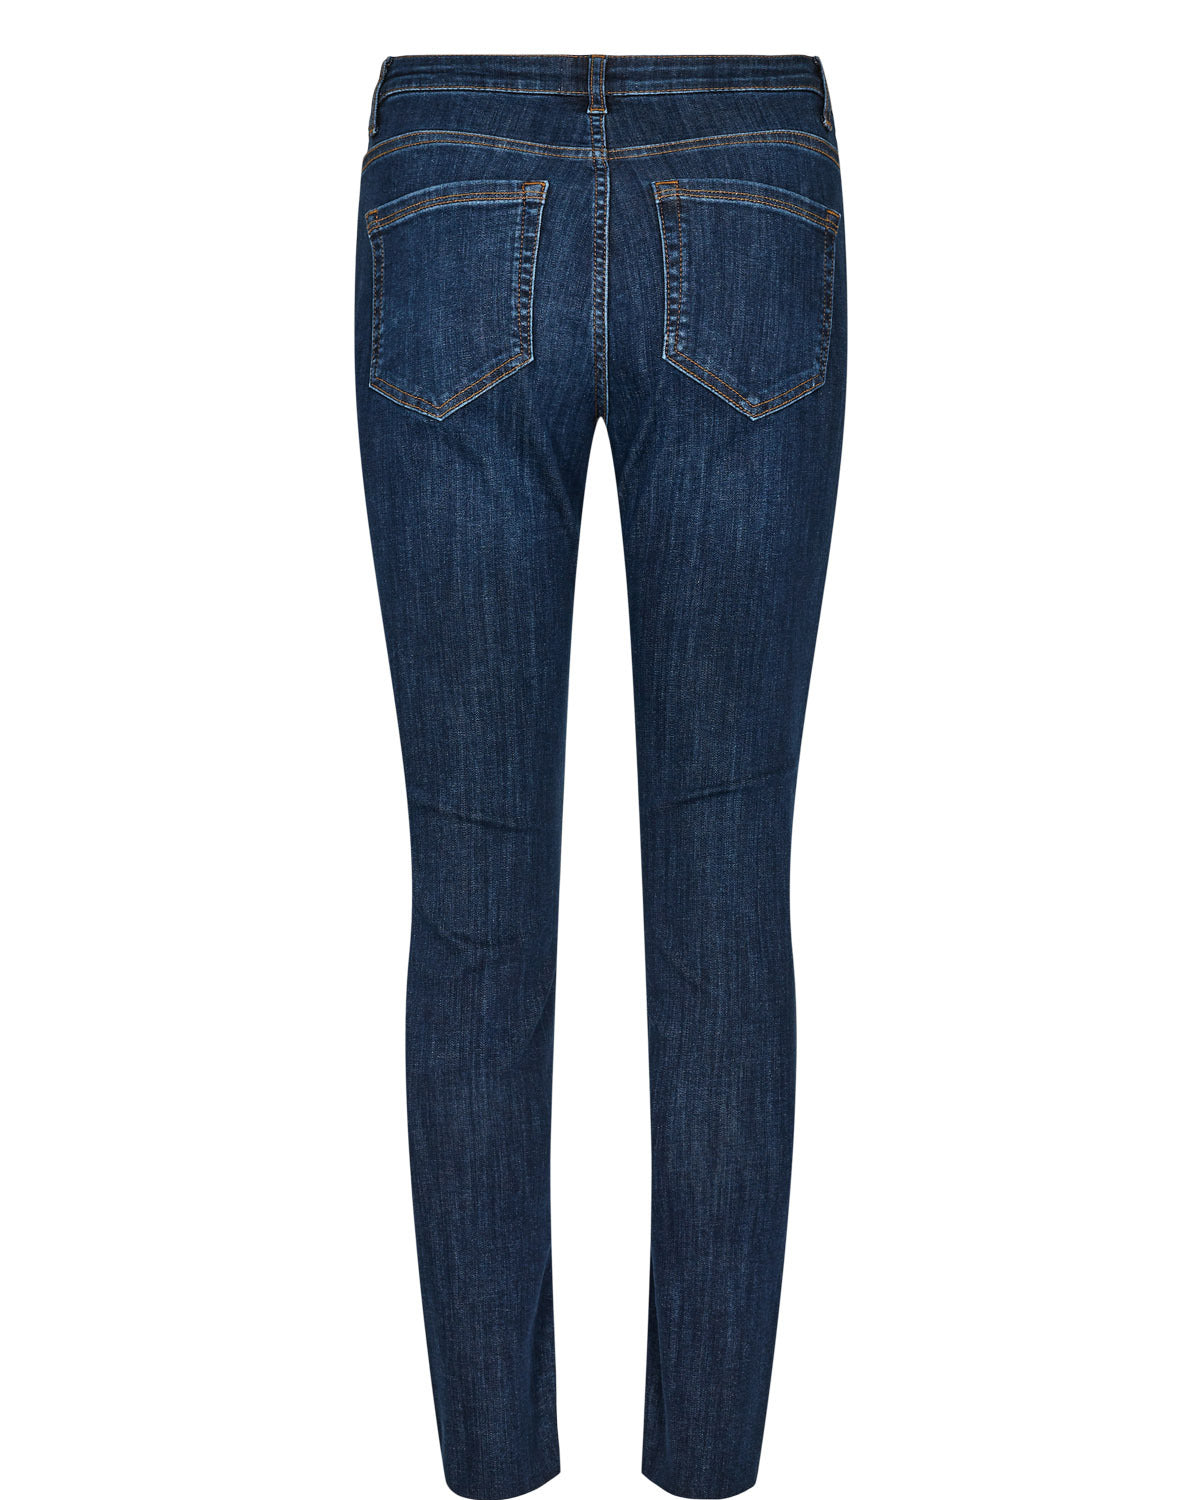 
                  
                    NUSIDNEY Dark Blue Denim Cropped Jeans
                  
                